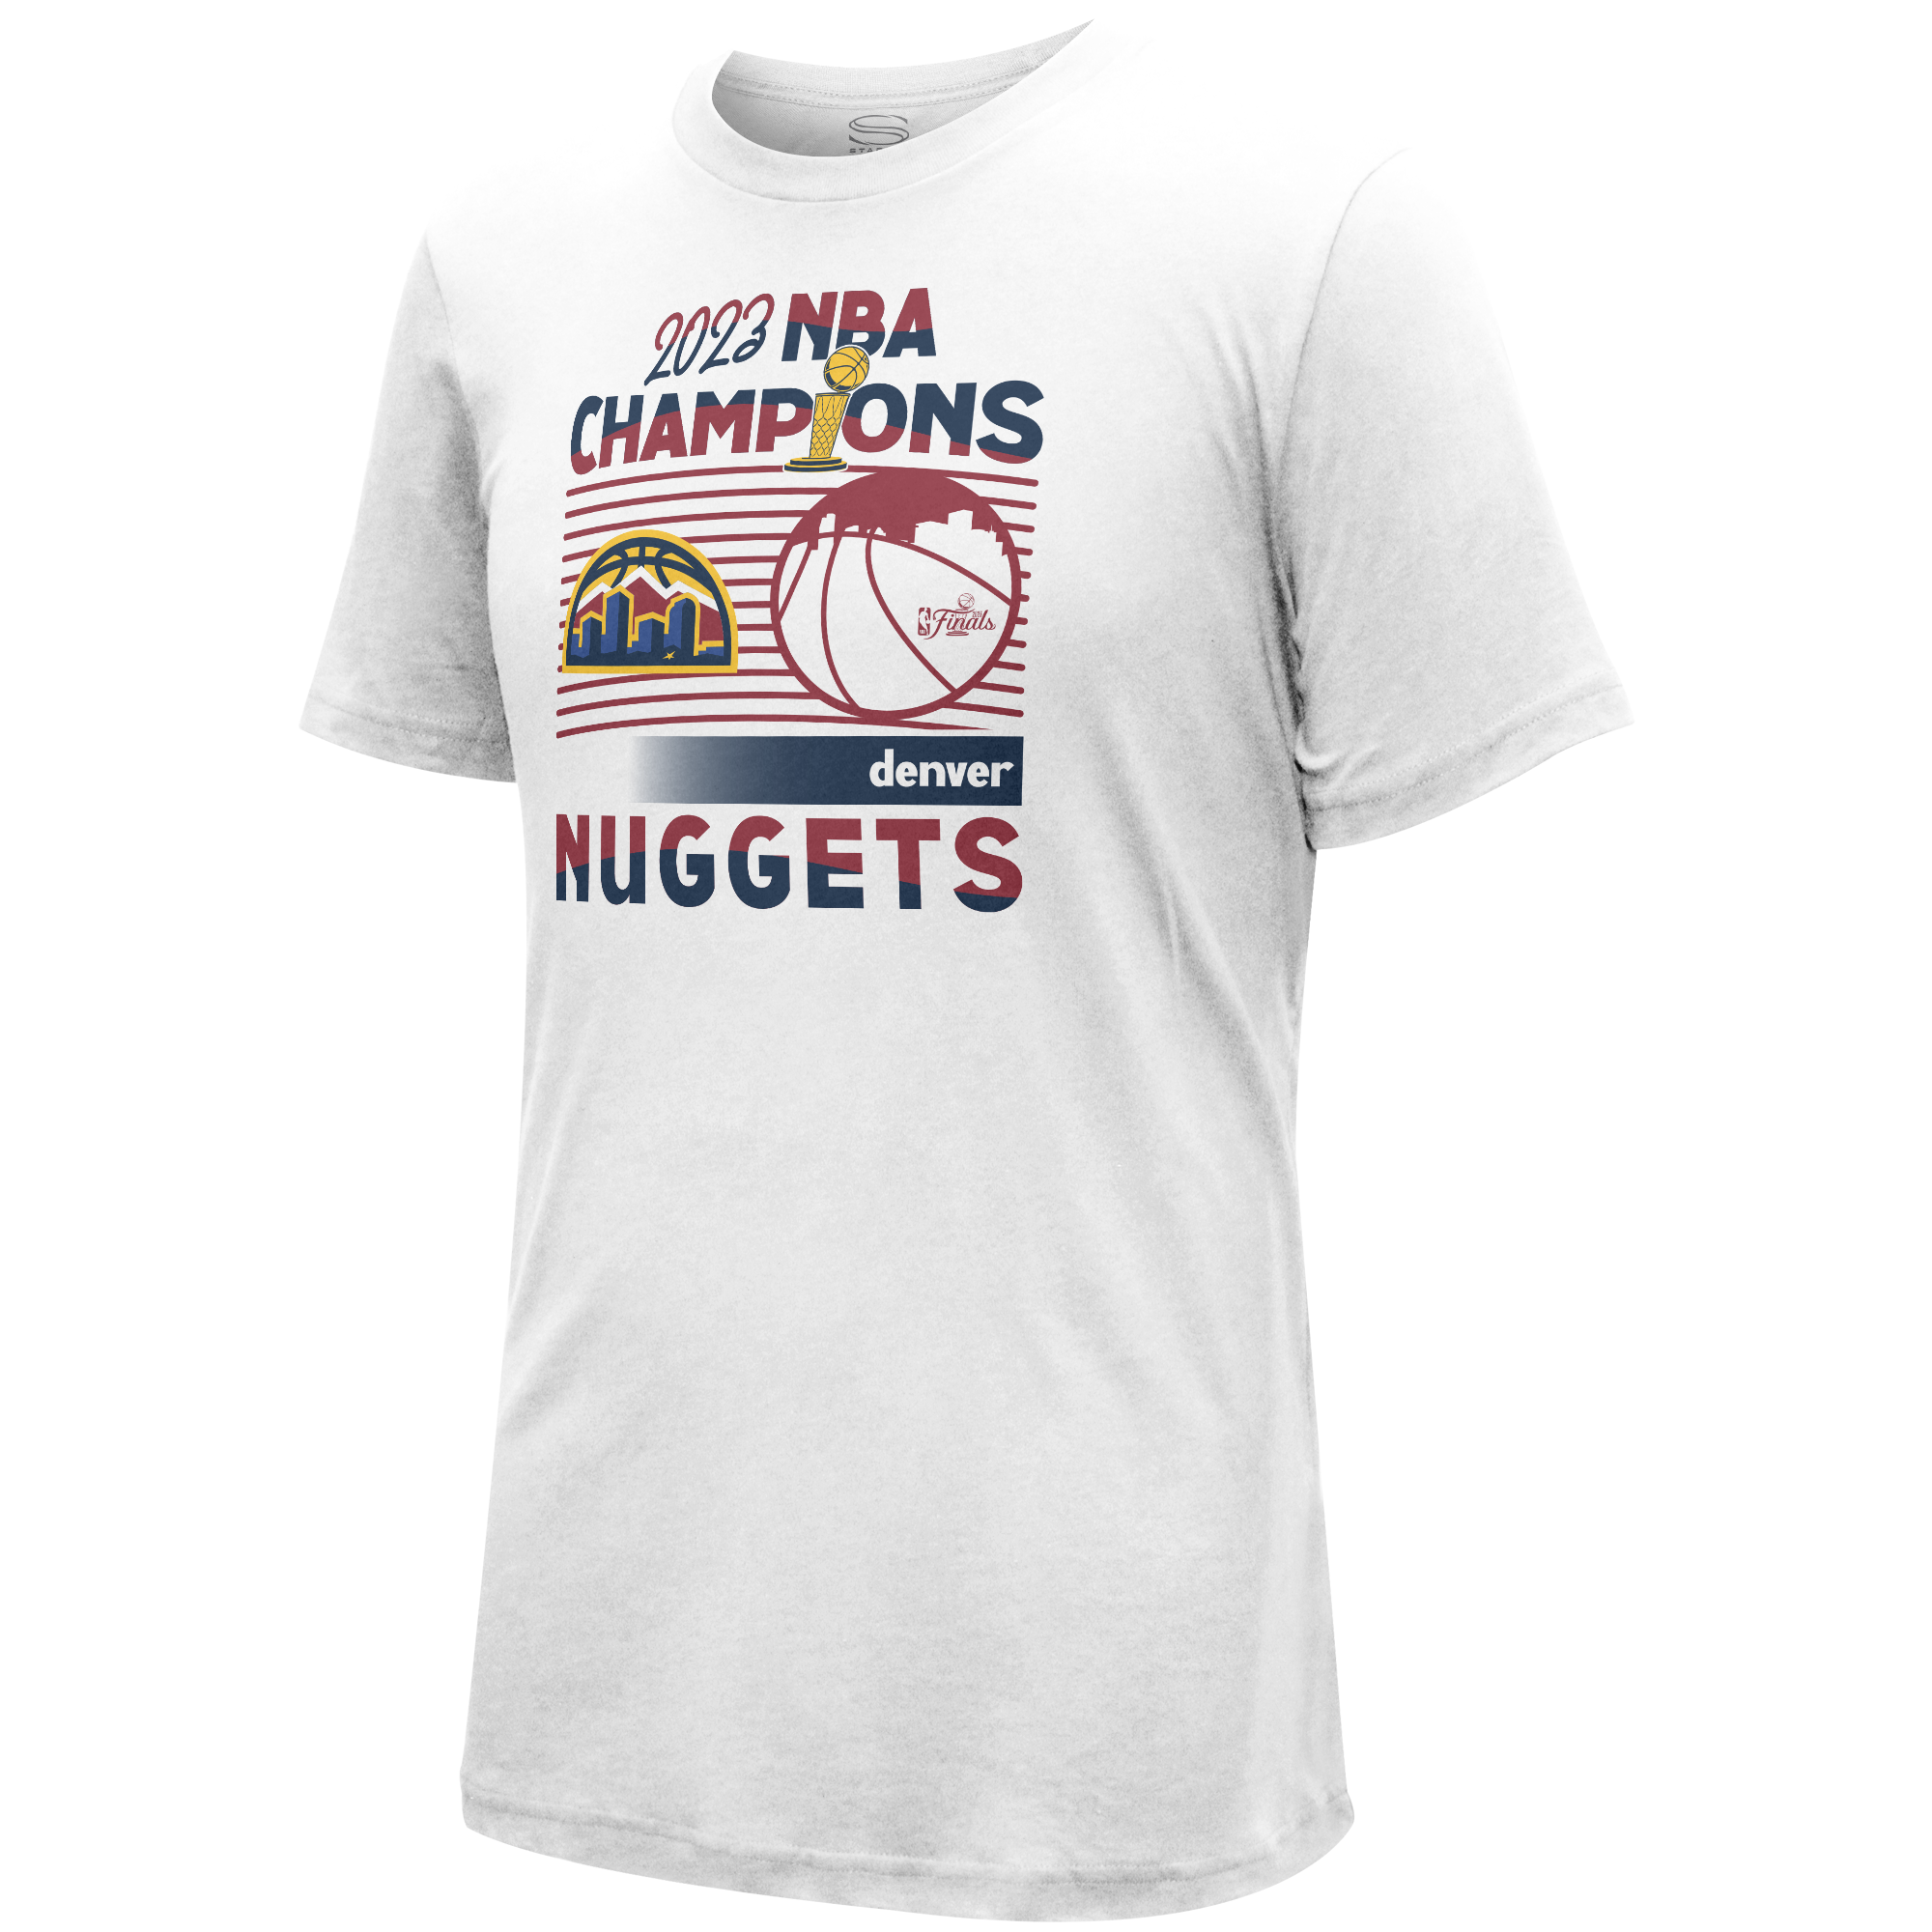 NBA Store T-Shirt Men's 2XL New York City Basketball Tee